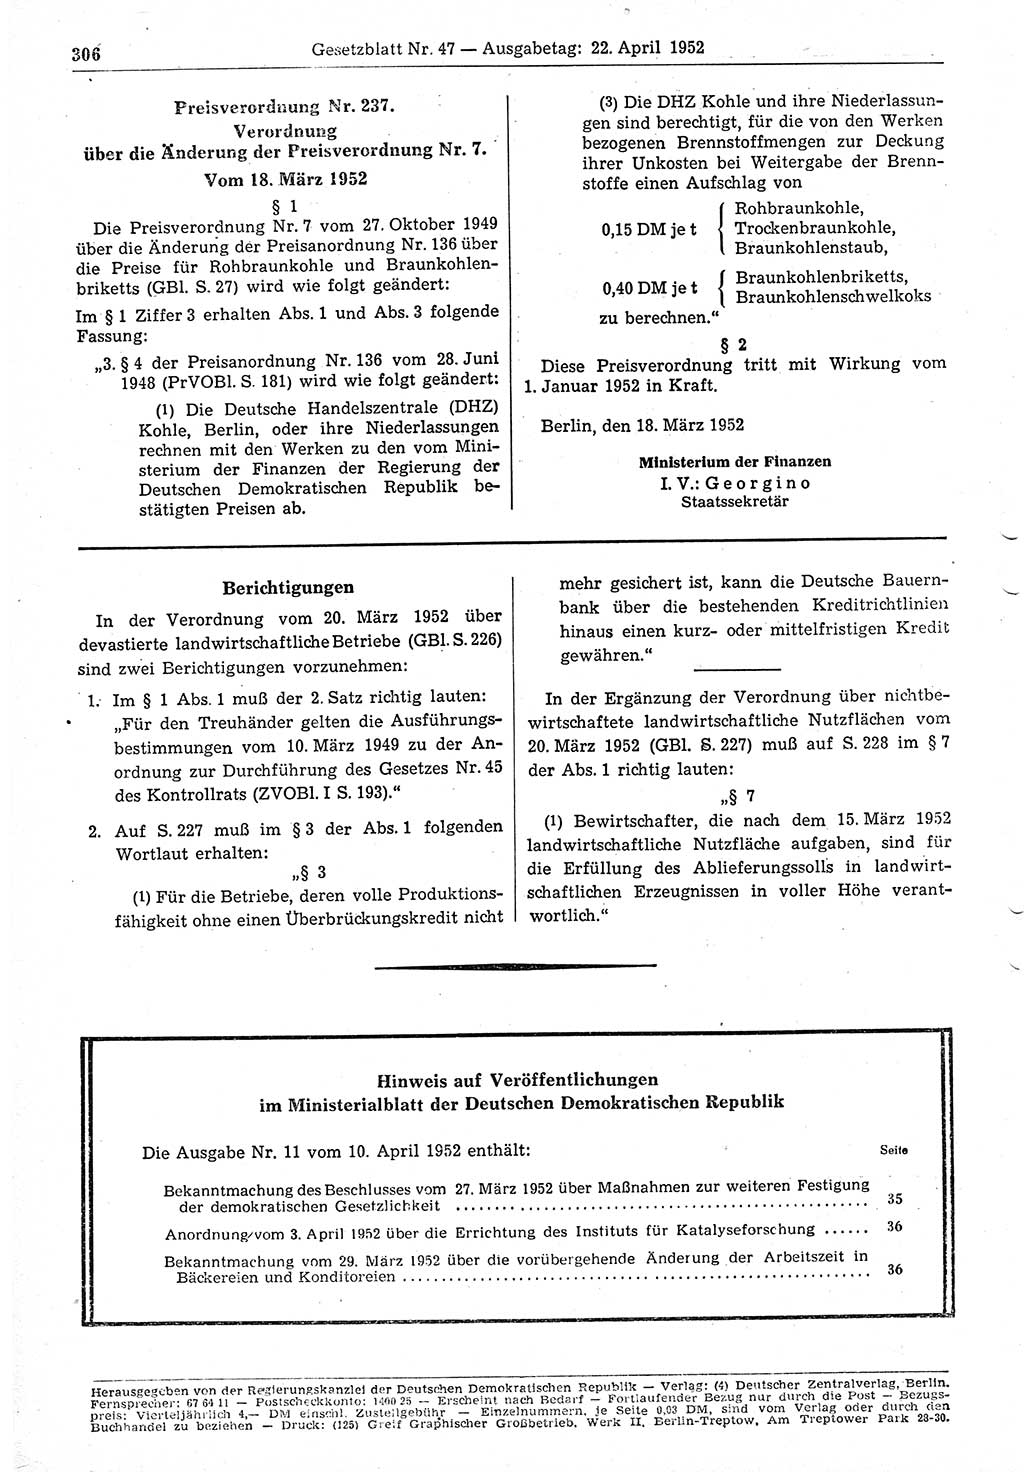 Gesetzblatt (GBl.) der Deutschen Demokratischen Republik (DDR) 1952, Seite 306 (GBl. DDR 1952, S. 306)